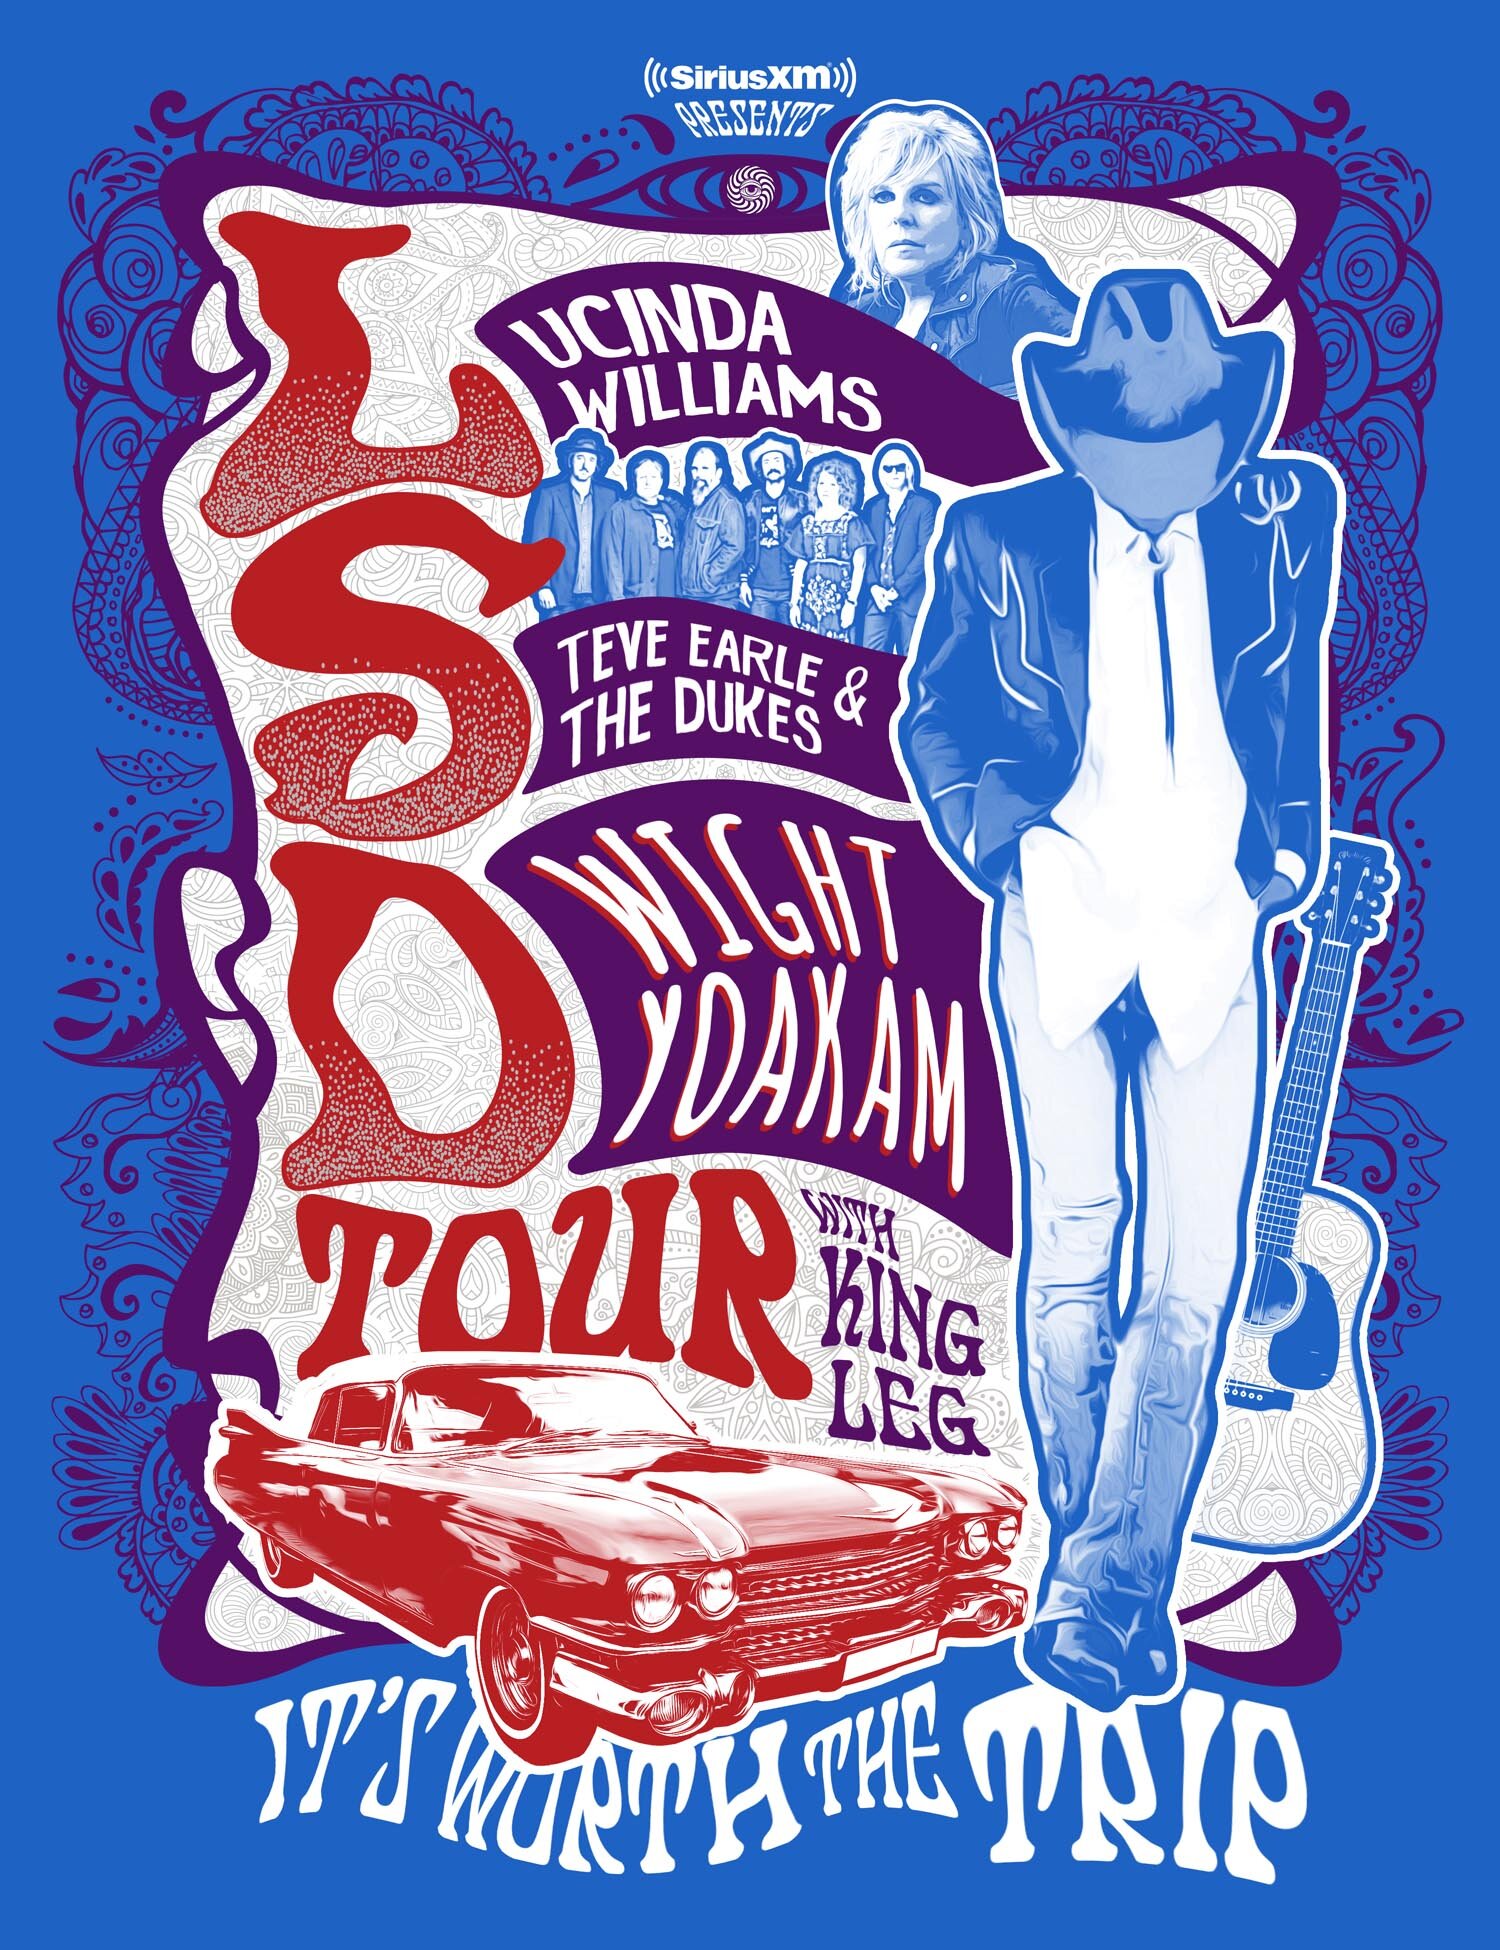 Lucinda Williams, Steve Earle, Dwight Yoakam to Unite for LSD Tour